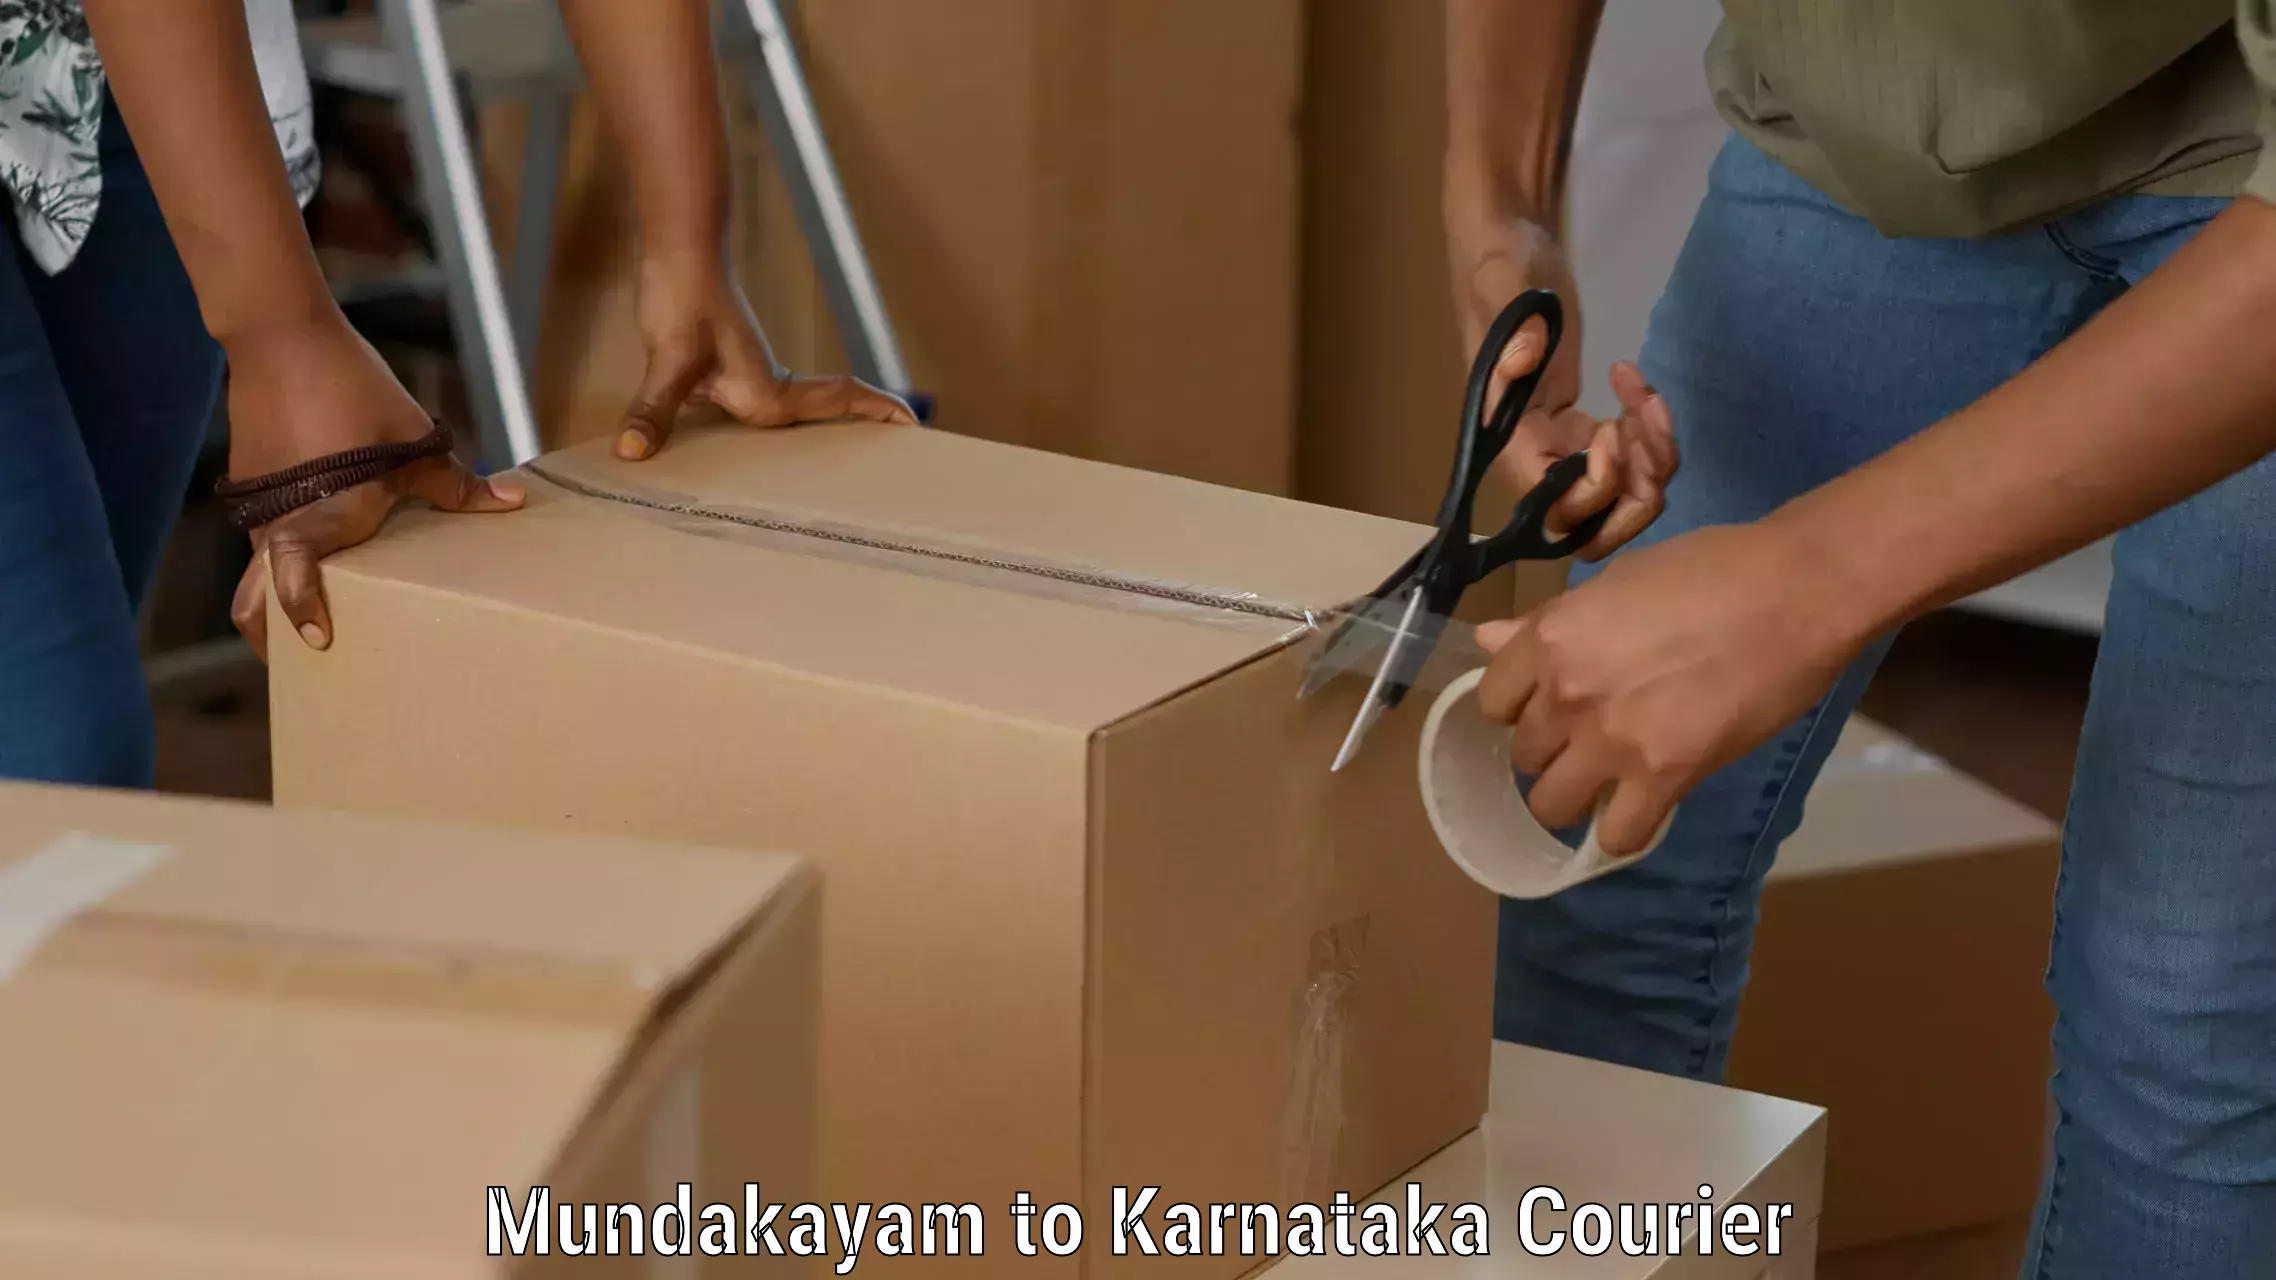 Specialized shipment handling Mundakayam to Karnataka